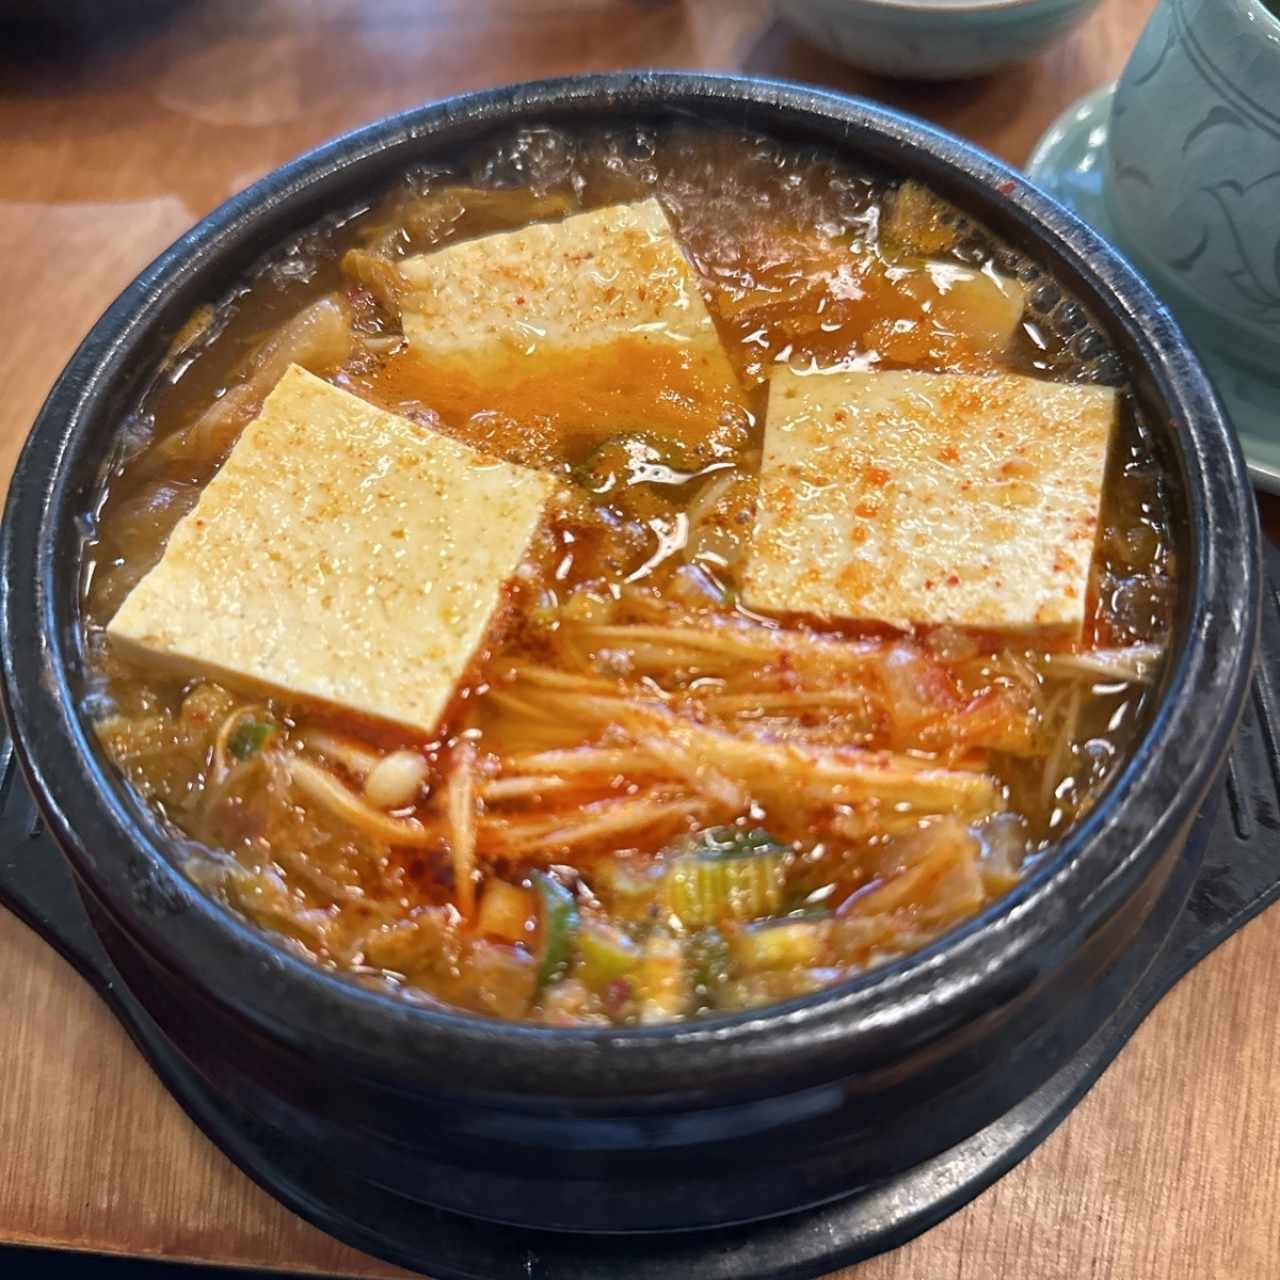 Sopa kimchi